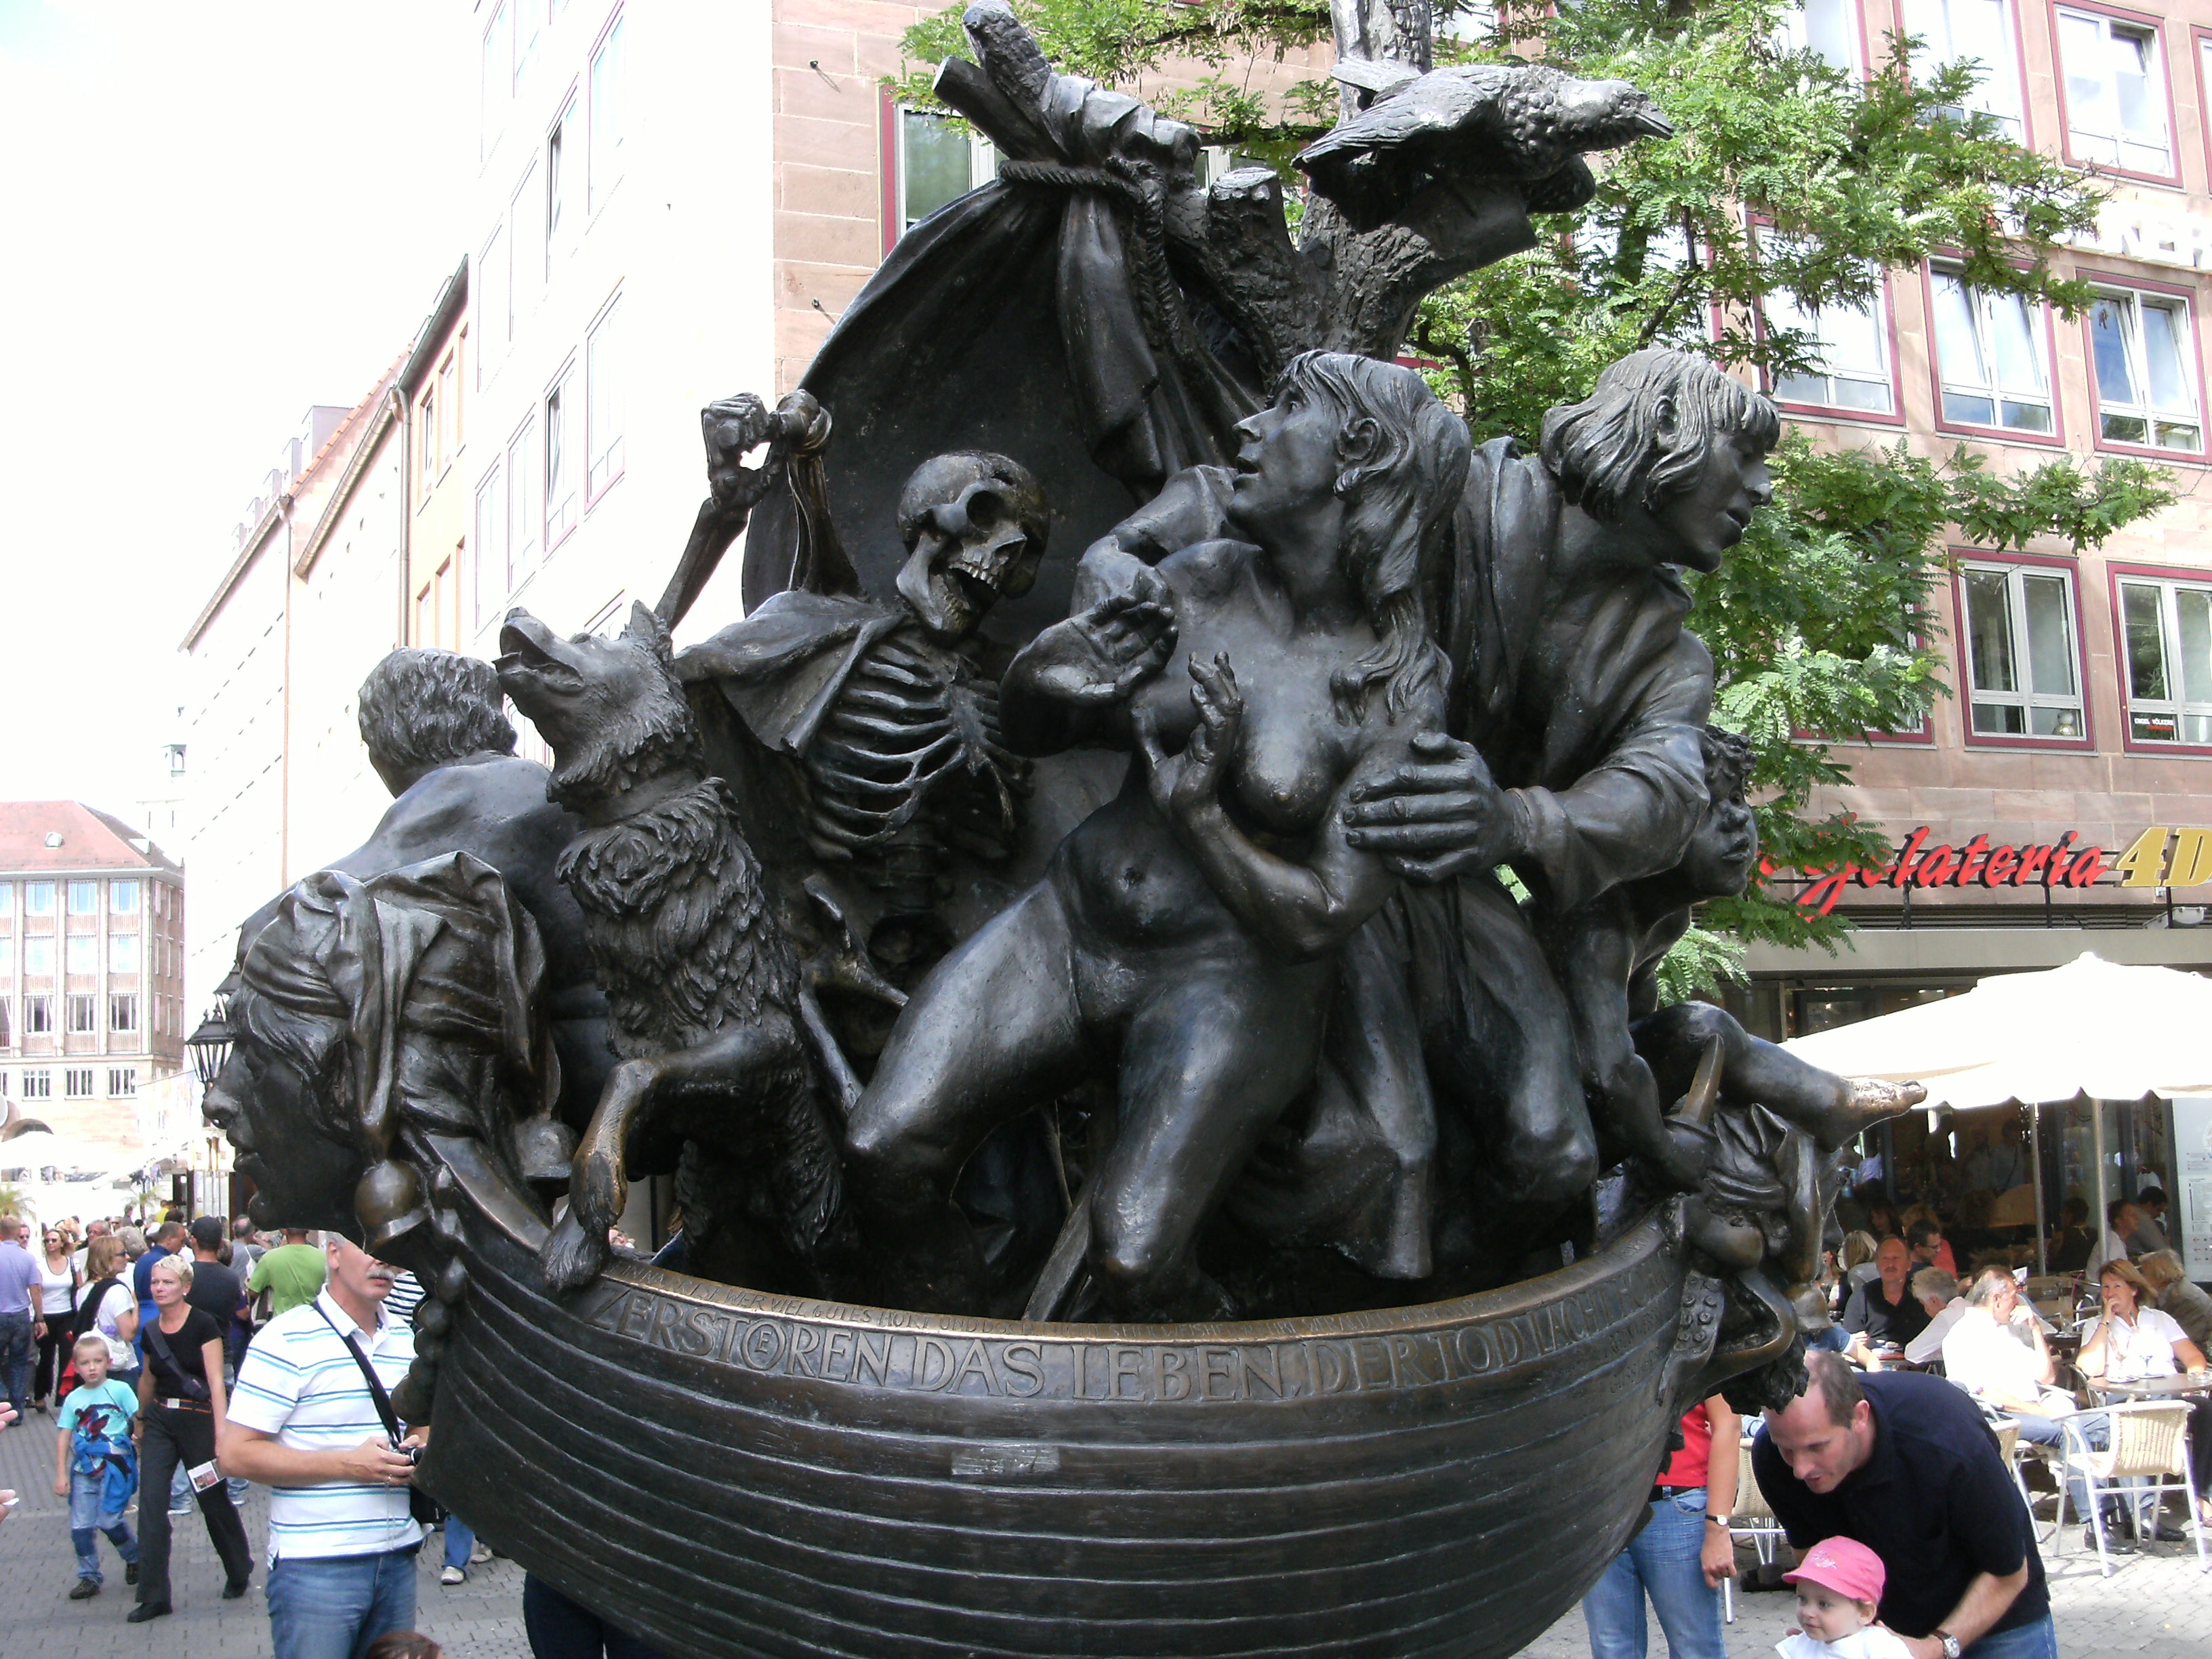 File:Sculpture in Nürnberg 4.JPG - Wikimedia Commons